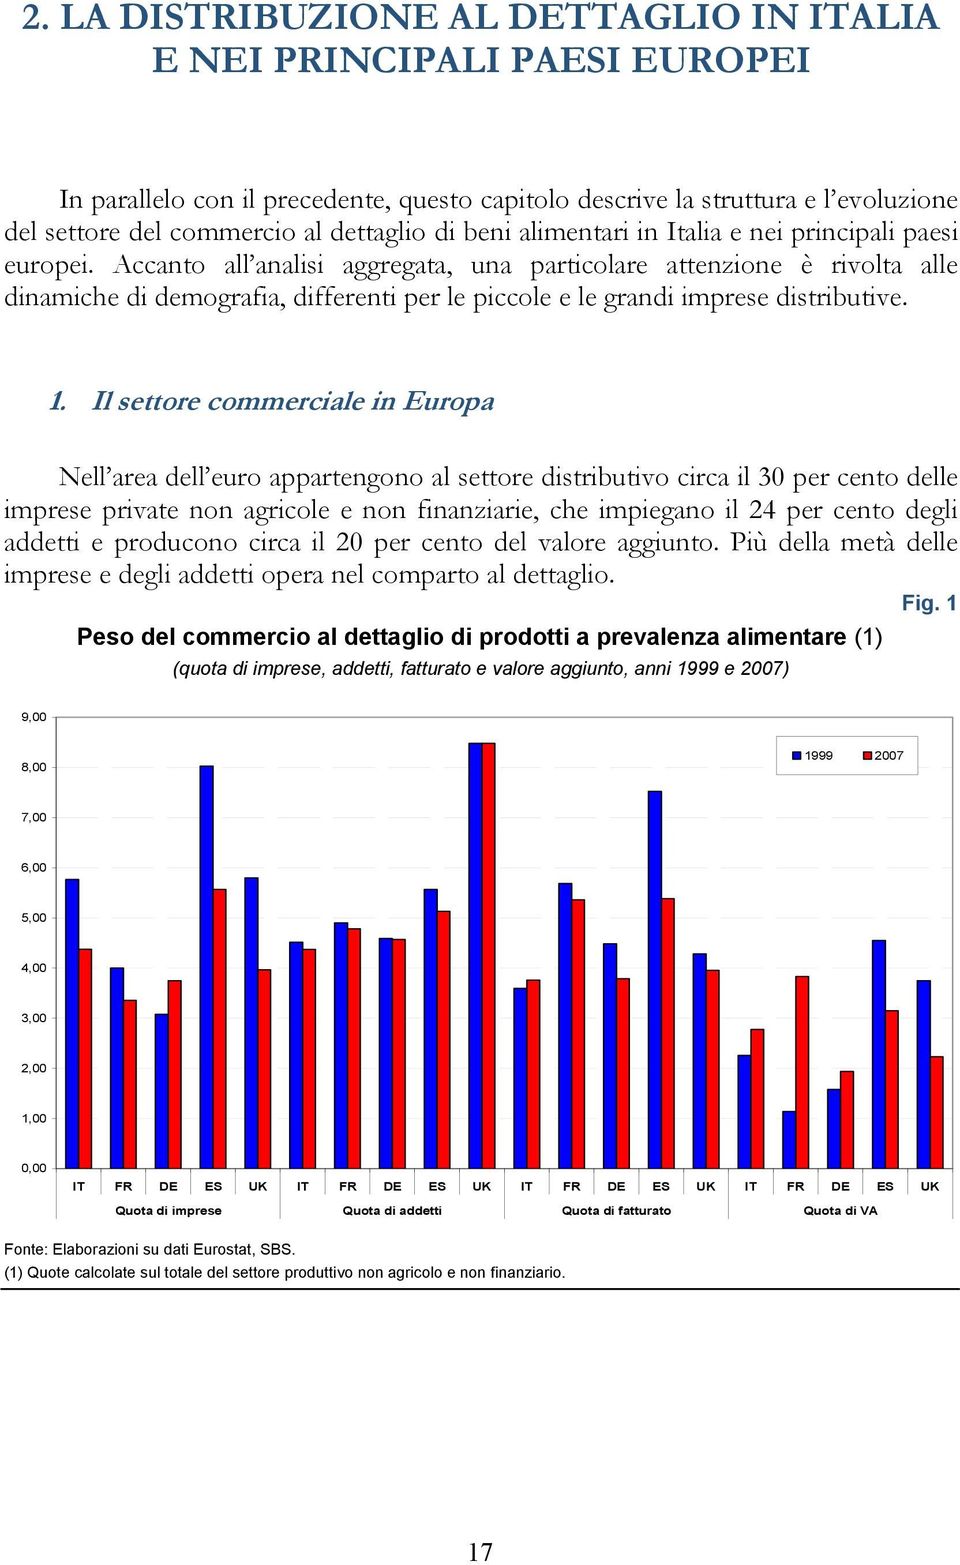 1. Il seore commerciale in Europa Nell area dell euro apparengono al seore disribuivo circa il 30 per ceno delle imprese privae non agricole e non finanziarie, che impiegano il 24 per ceno degli